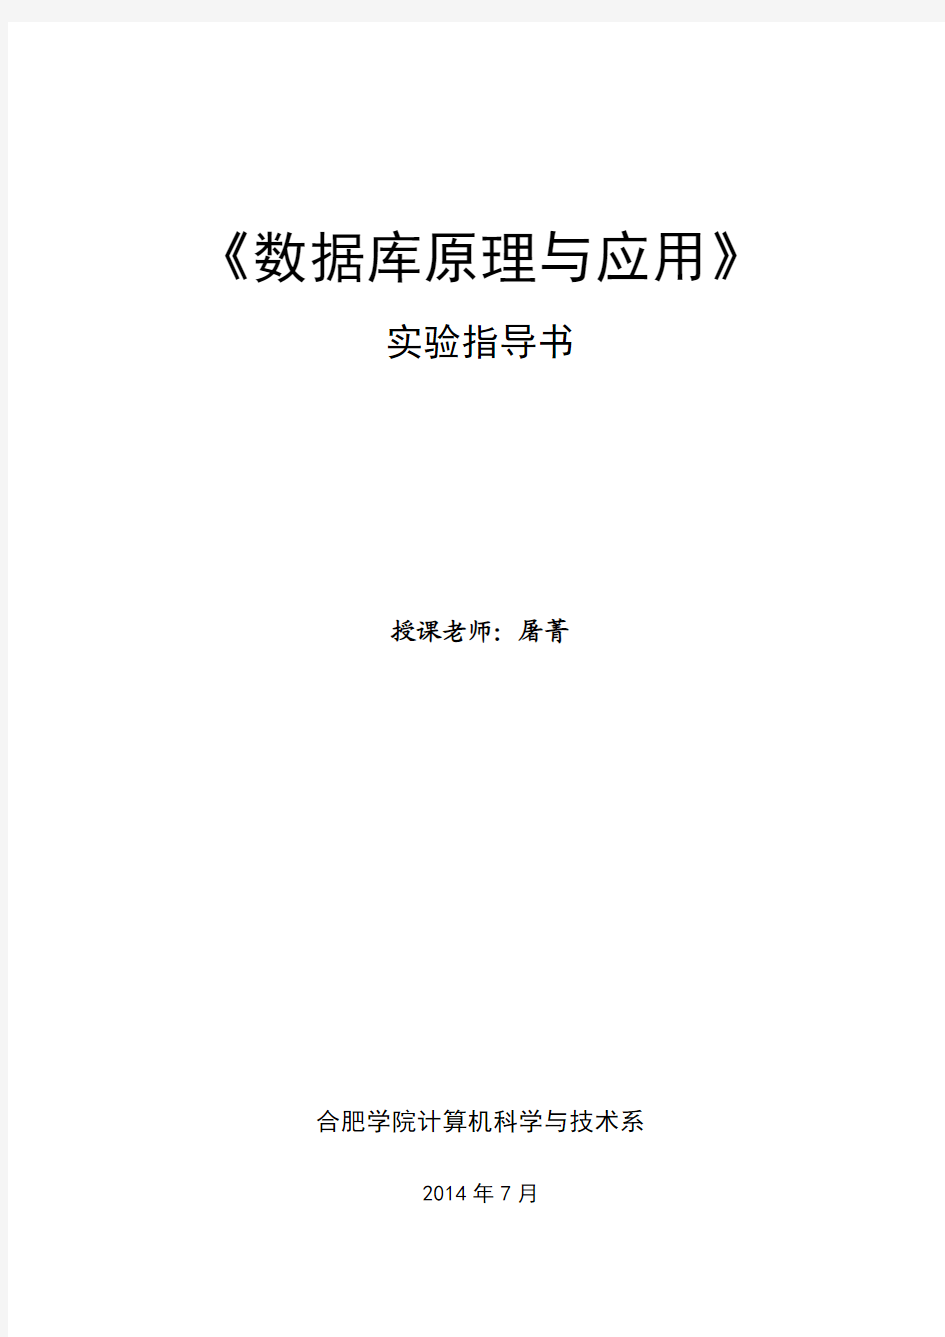 屠菁-《数据库原理与应用》实验指导书(new)